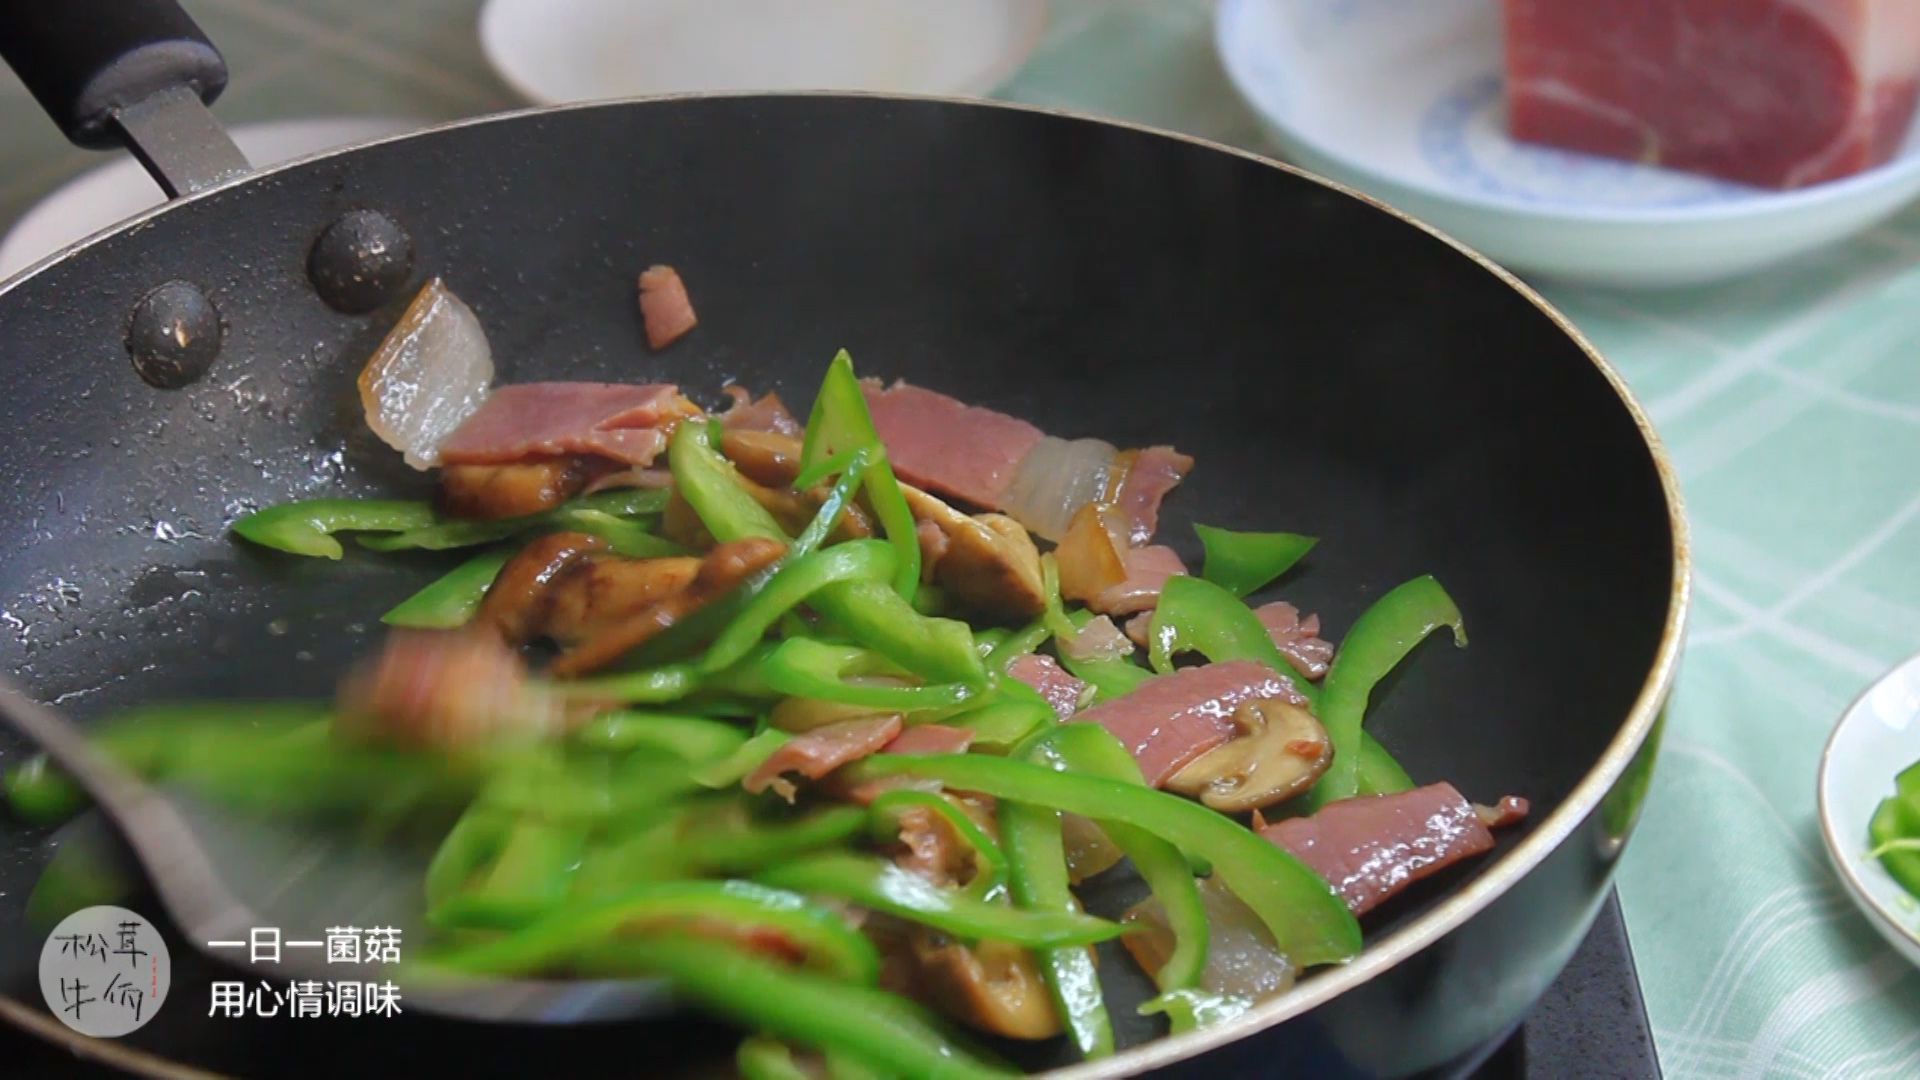 美食视频青椒火腿炒松茸的做法步骤图牛佤松茸食谱